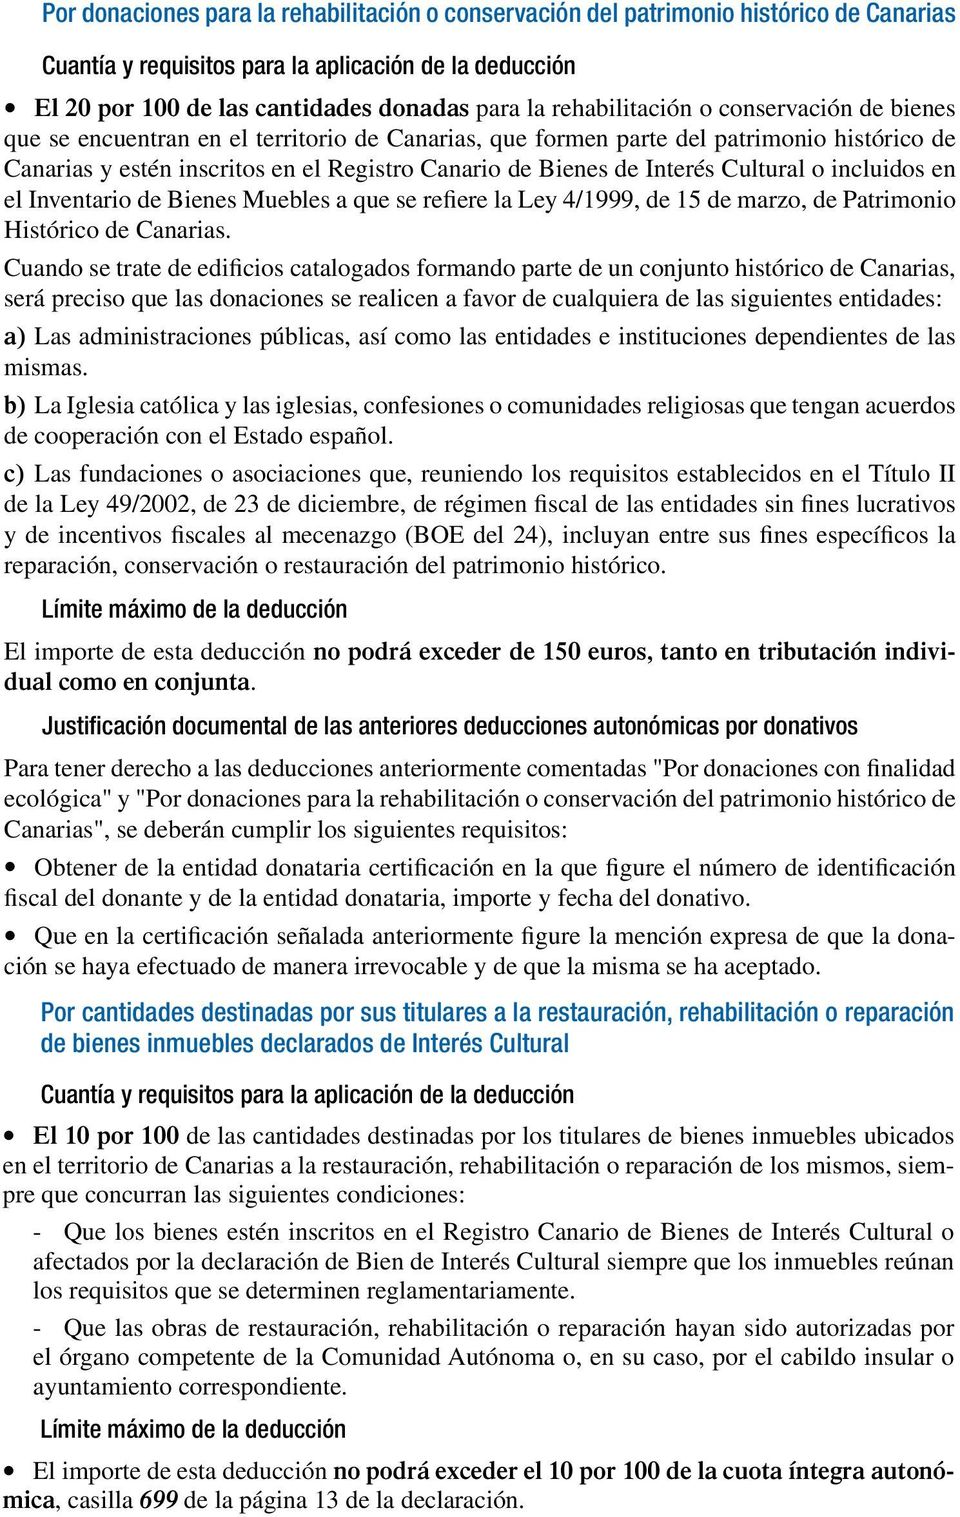 Interés Cultural o incluidos en el Inventario de Bienes Muebles a que se refiere la Ley 4/1999, de 15 de marzo, de Patrimonio Histórico de Canarias.